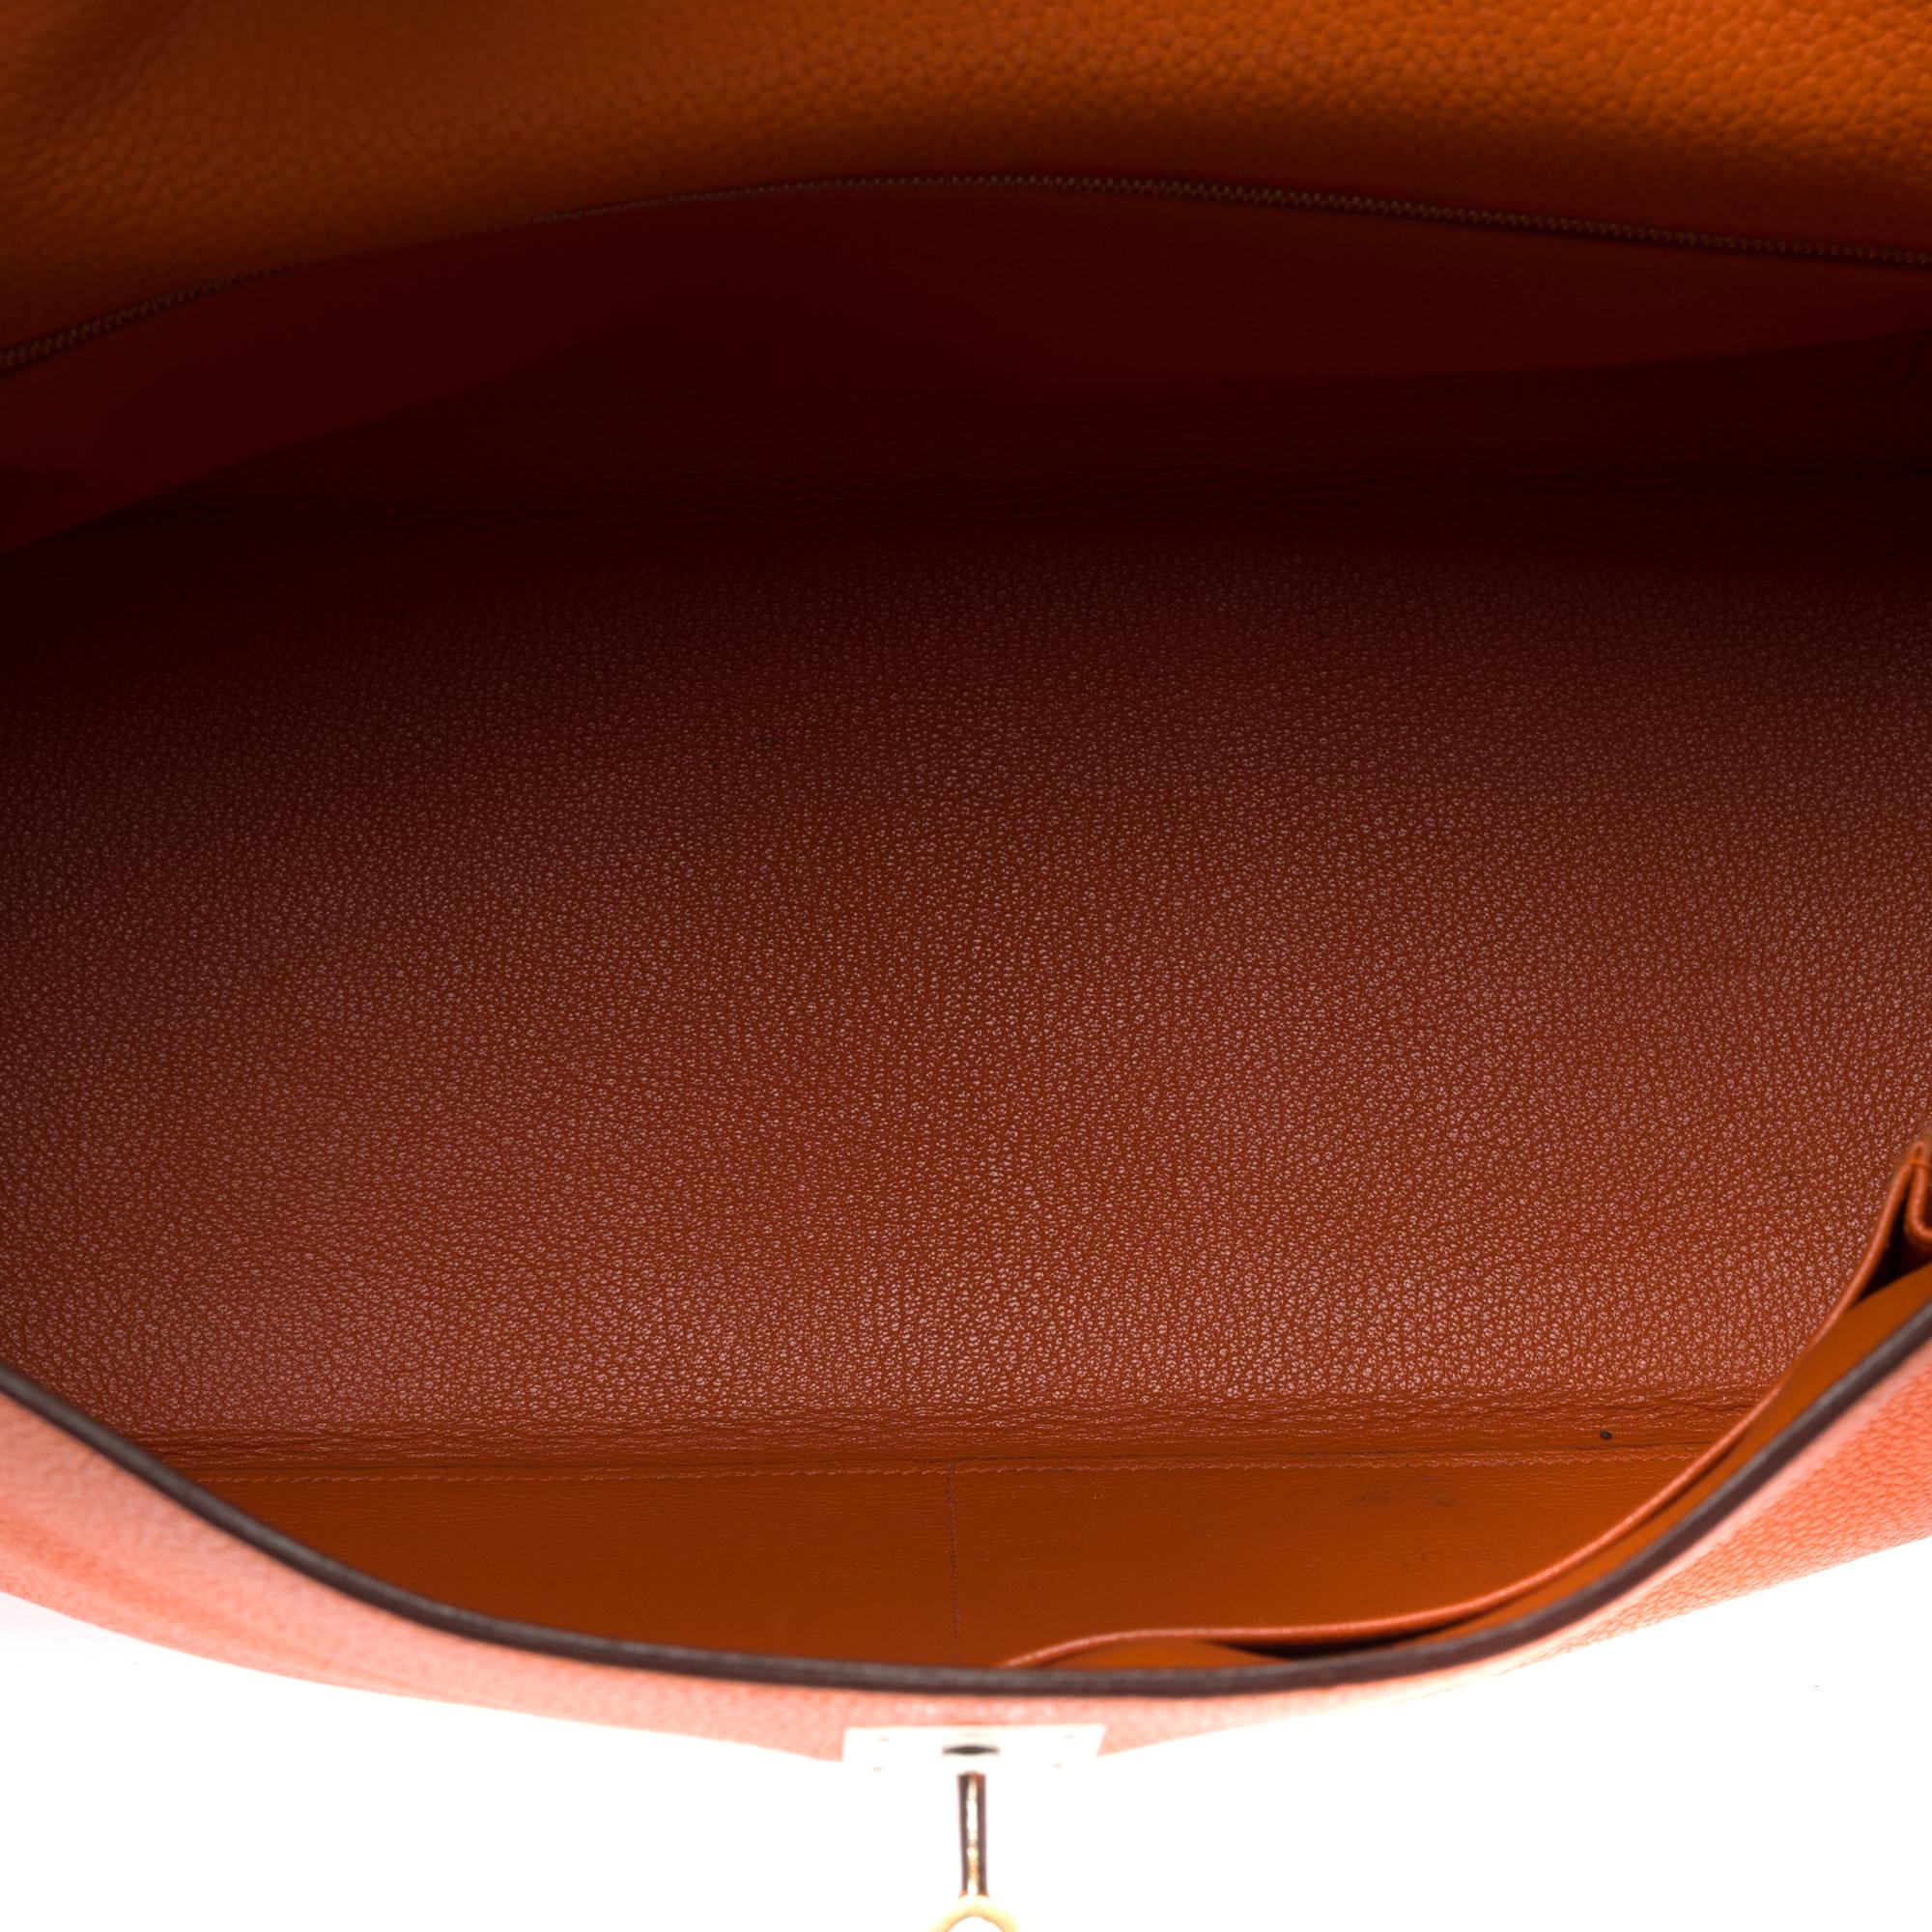 Hermes Kelly 40 retourne handbag strap in Orange Togo leather, SHW 5